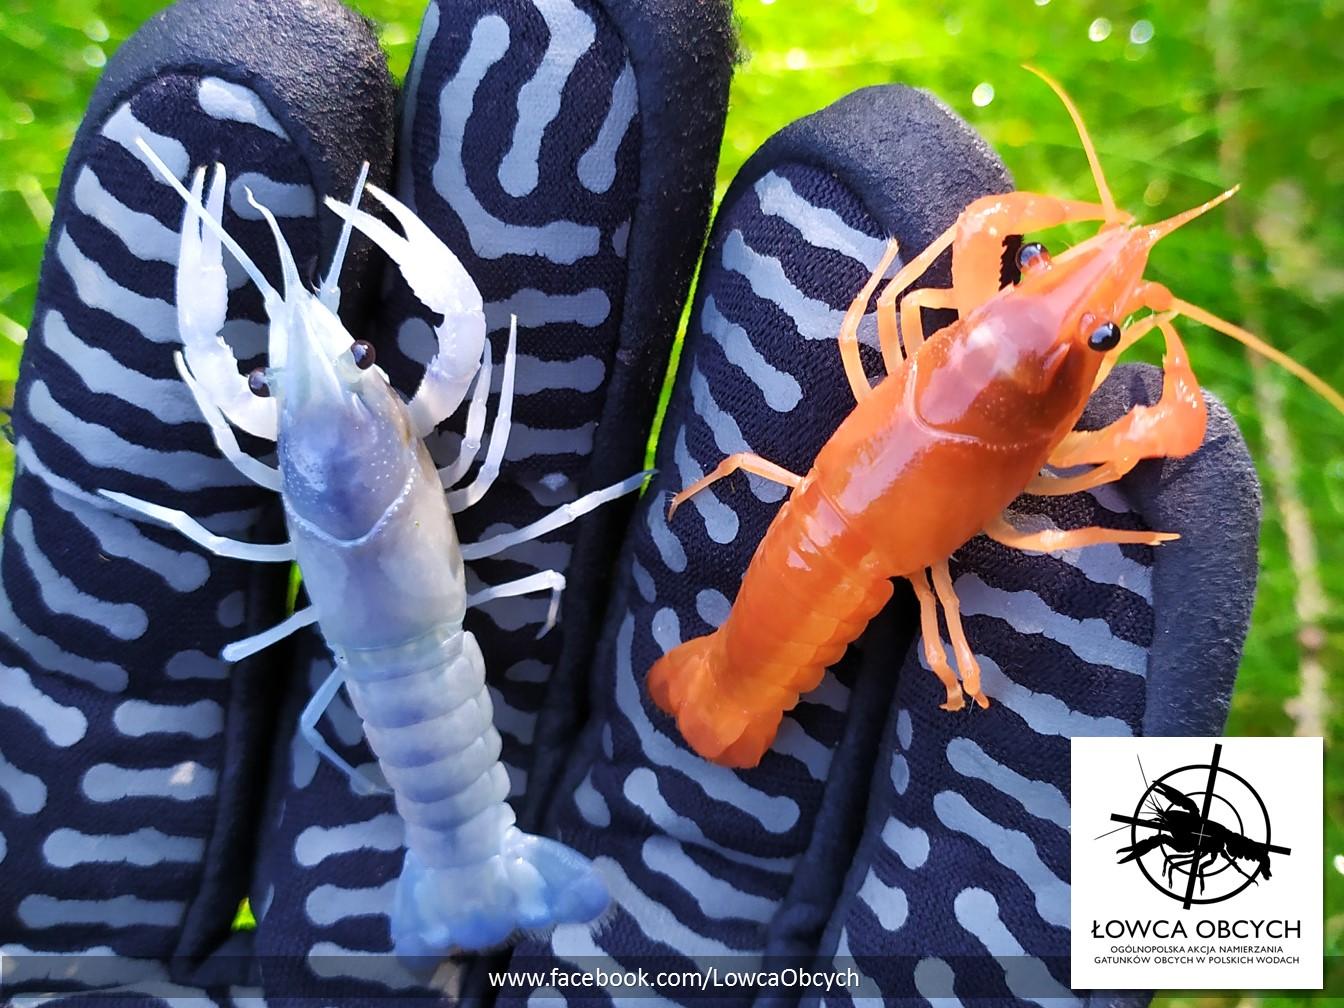 Rak luizjański (Procambarus clarkii) – odmiany niebieska i pomarańczowa. Fot. R. Maciaszek